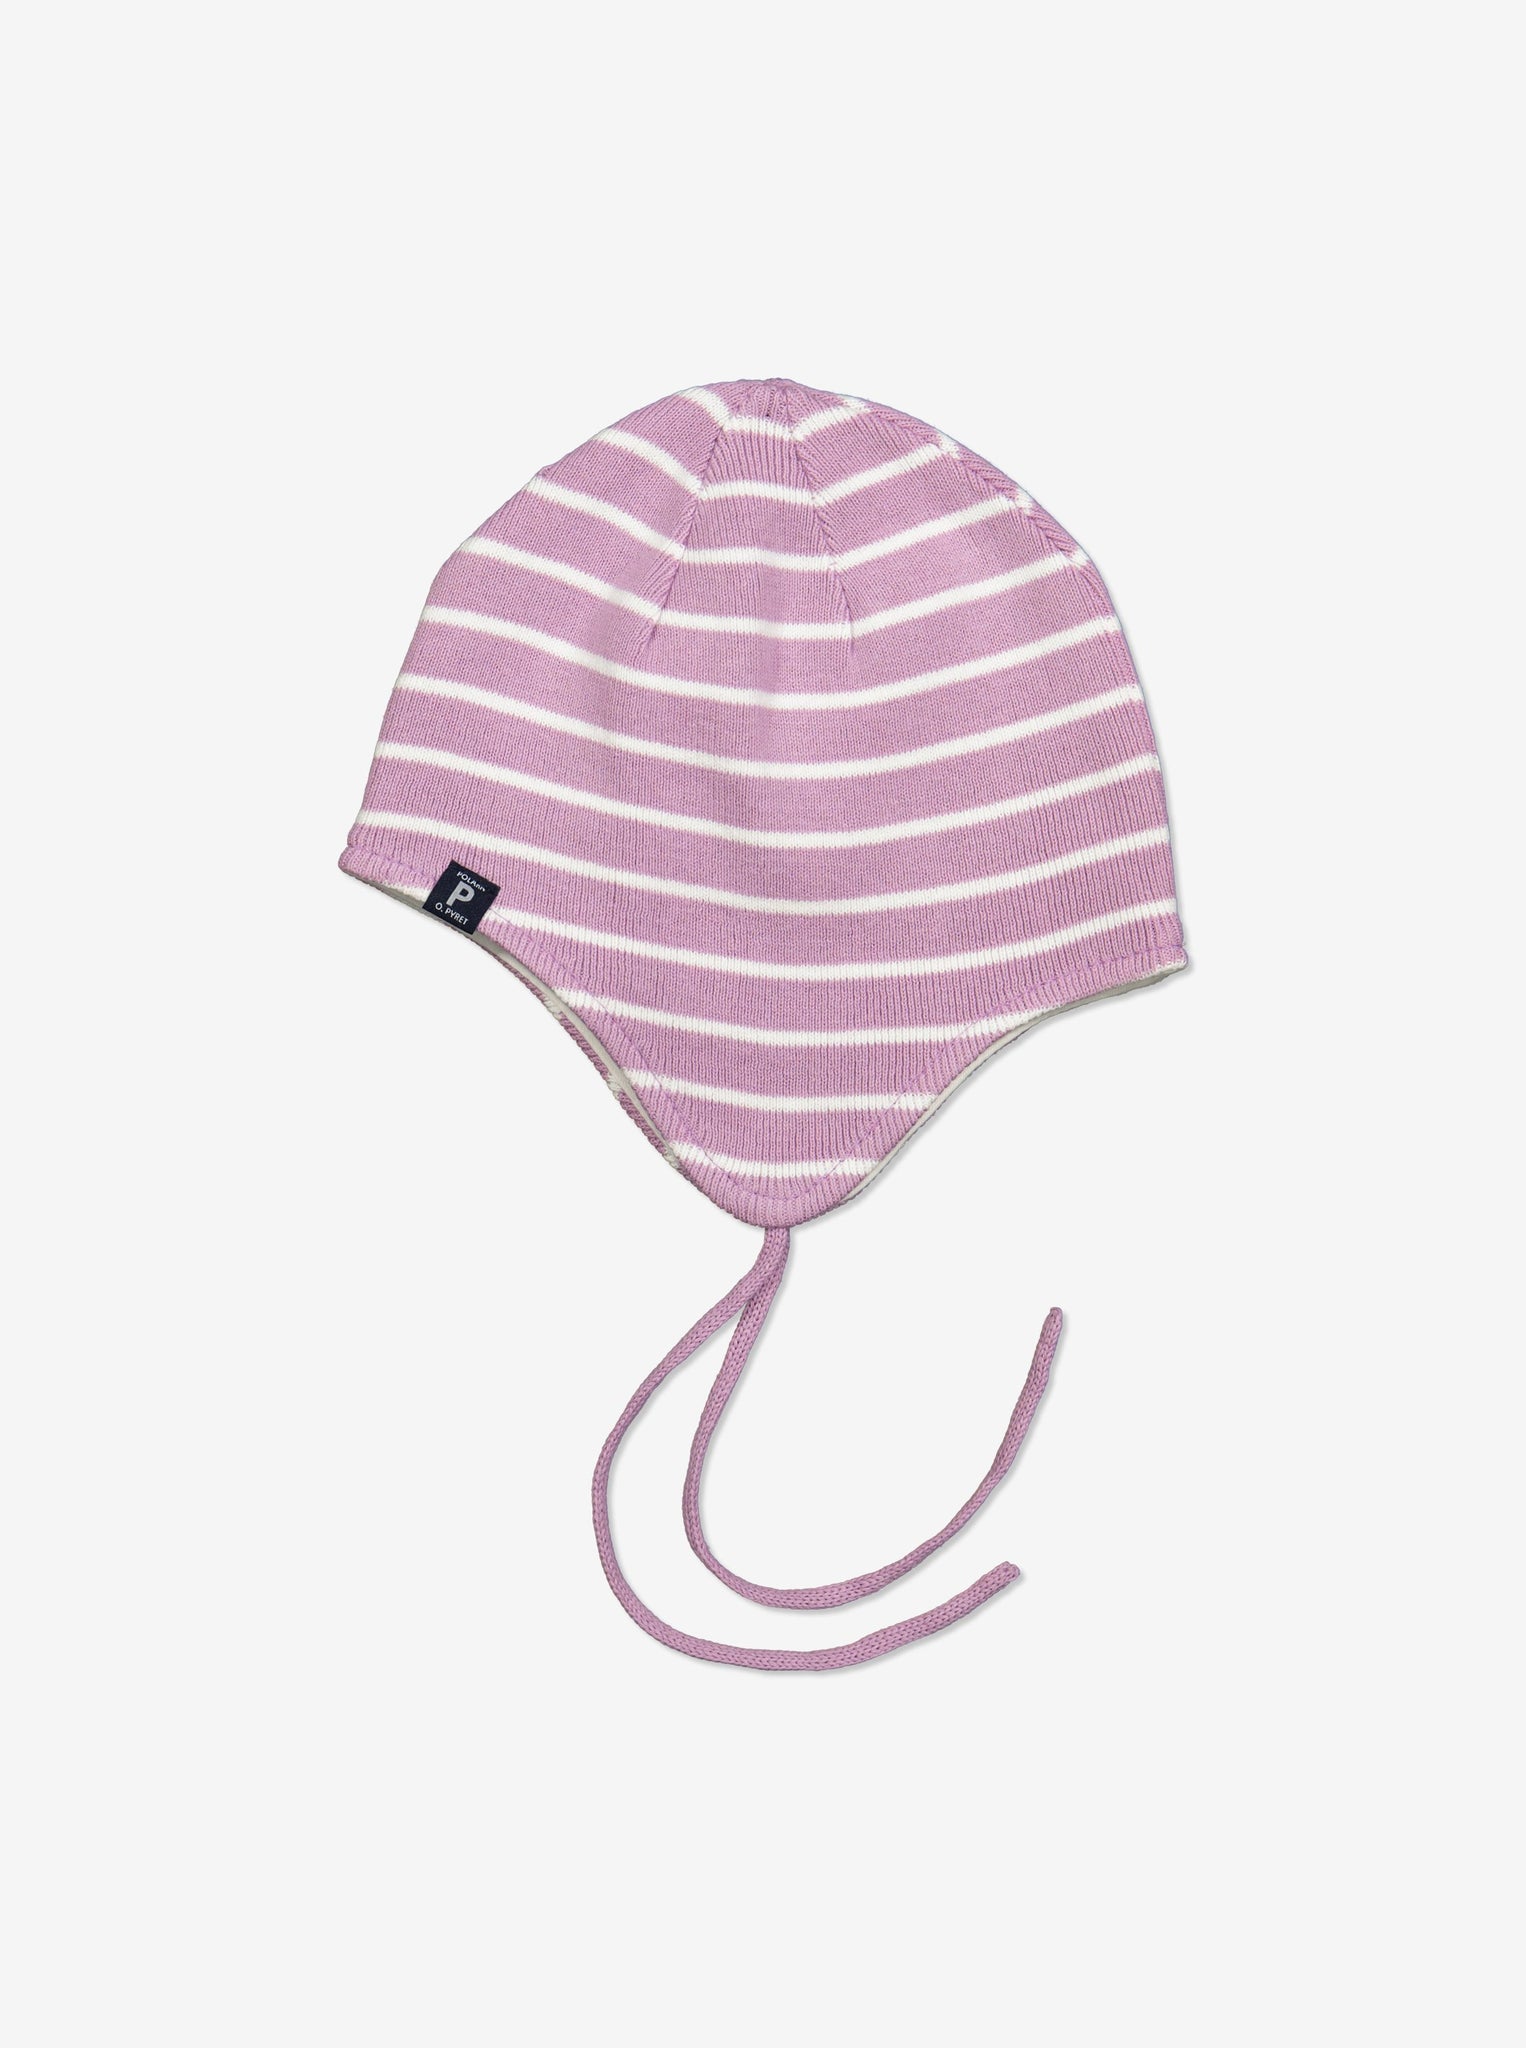 Striped Pink Baby Beanie Hat from Polarn O. Pyret Kidswear. Warm kids beanie